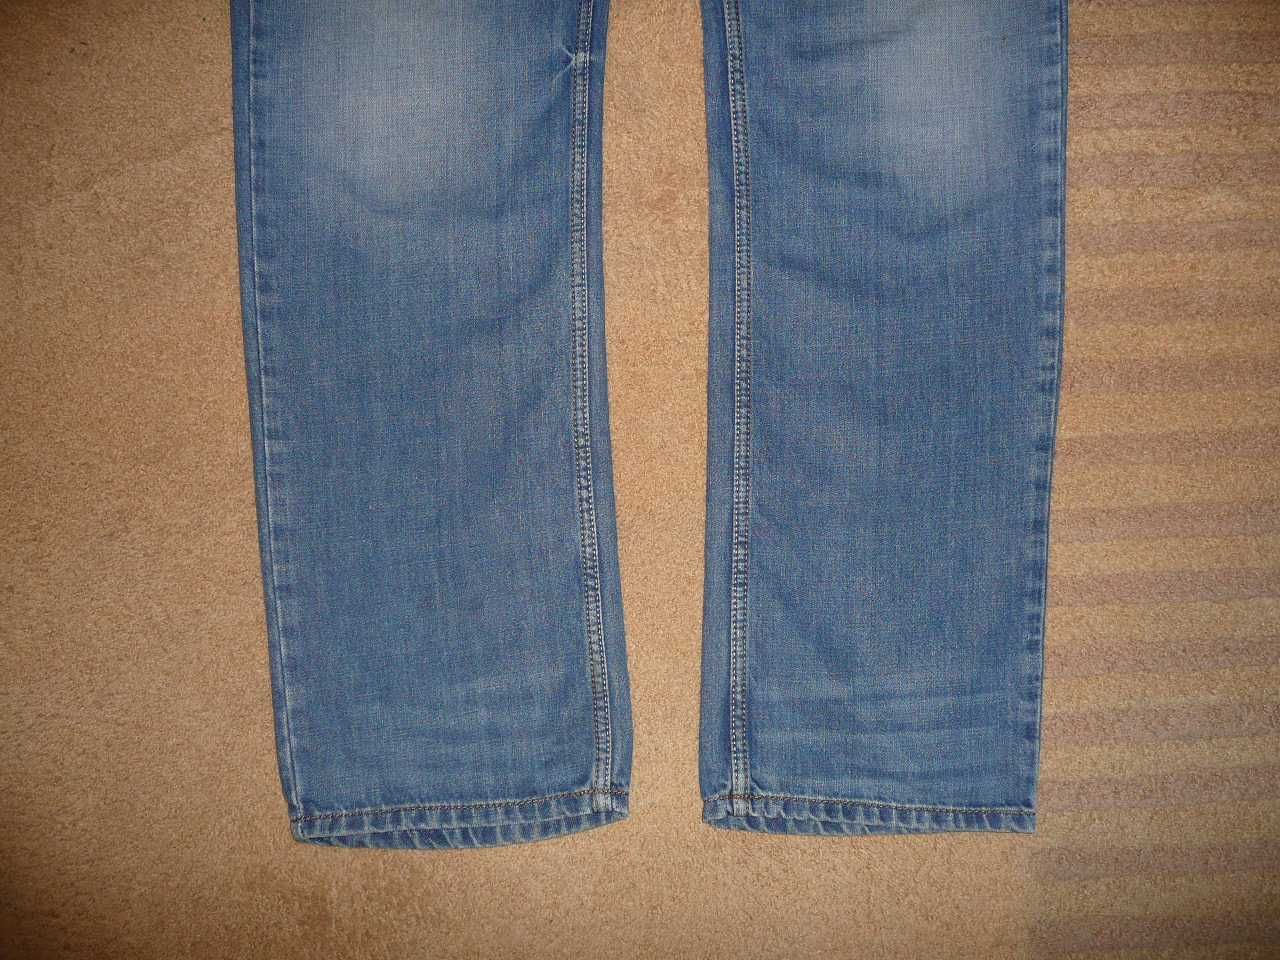 Spodnie dżinsy DIESEL W34/L34=48/110cm jeansy WAYKEE